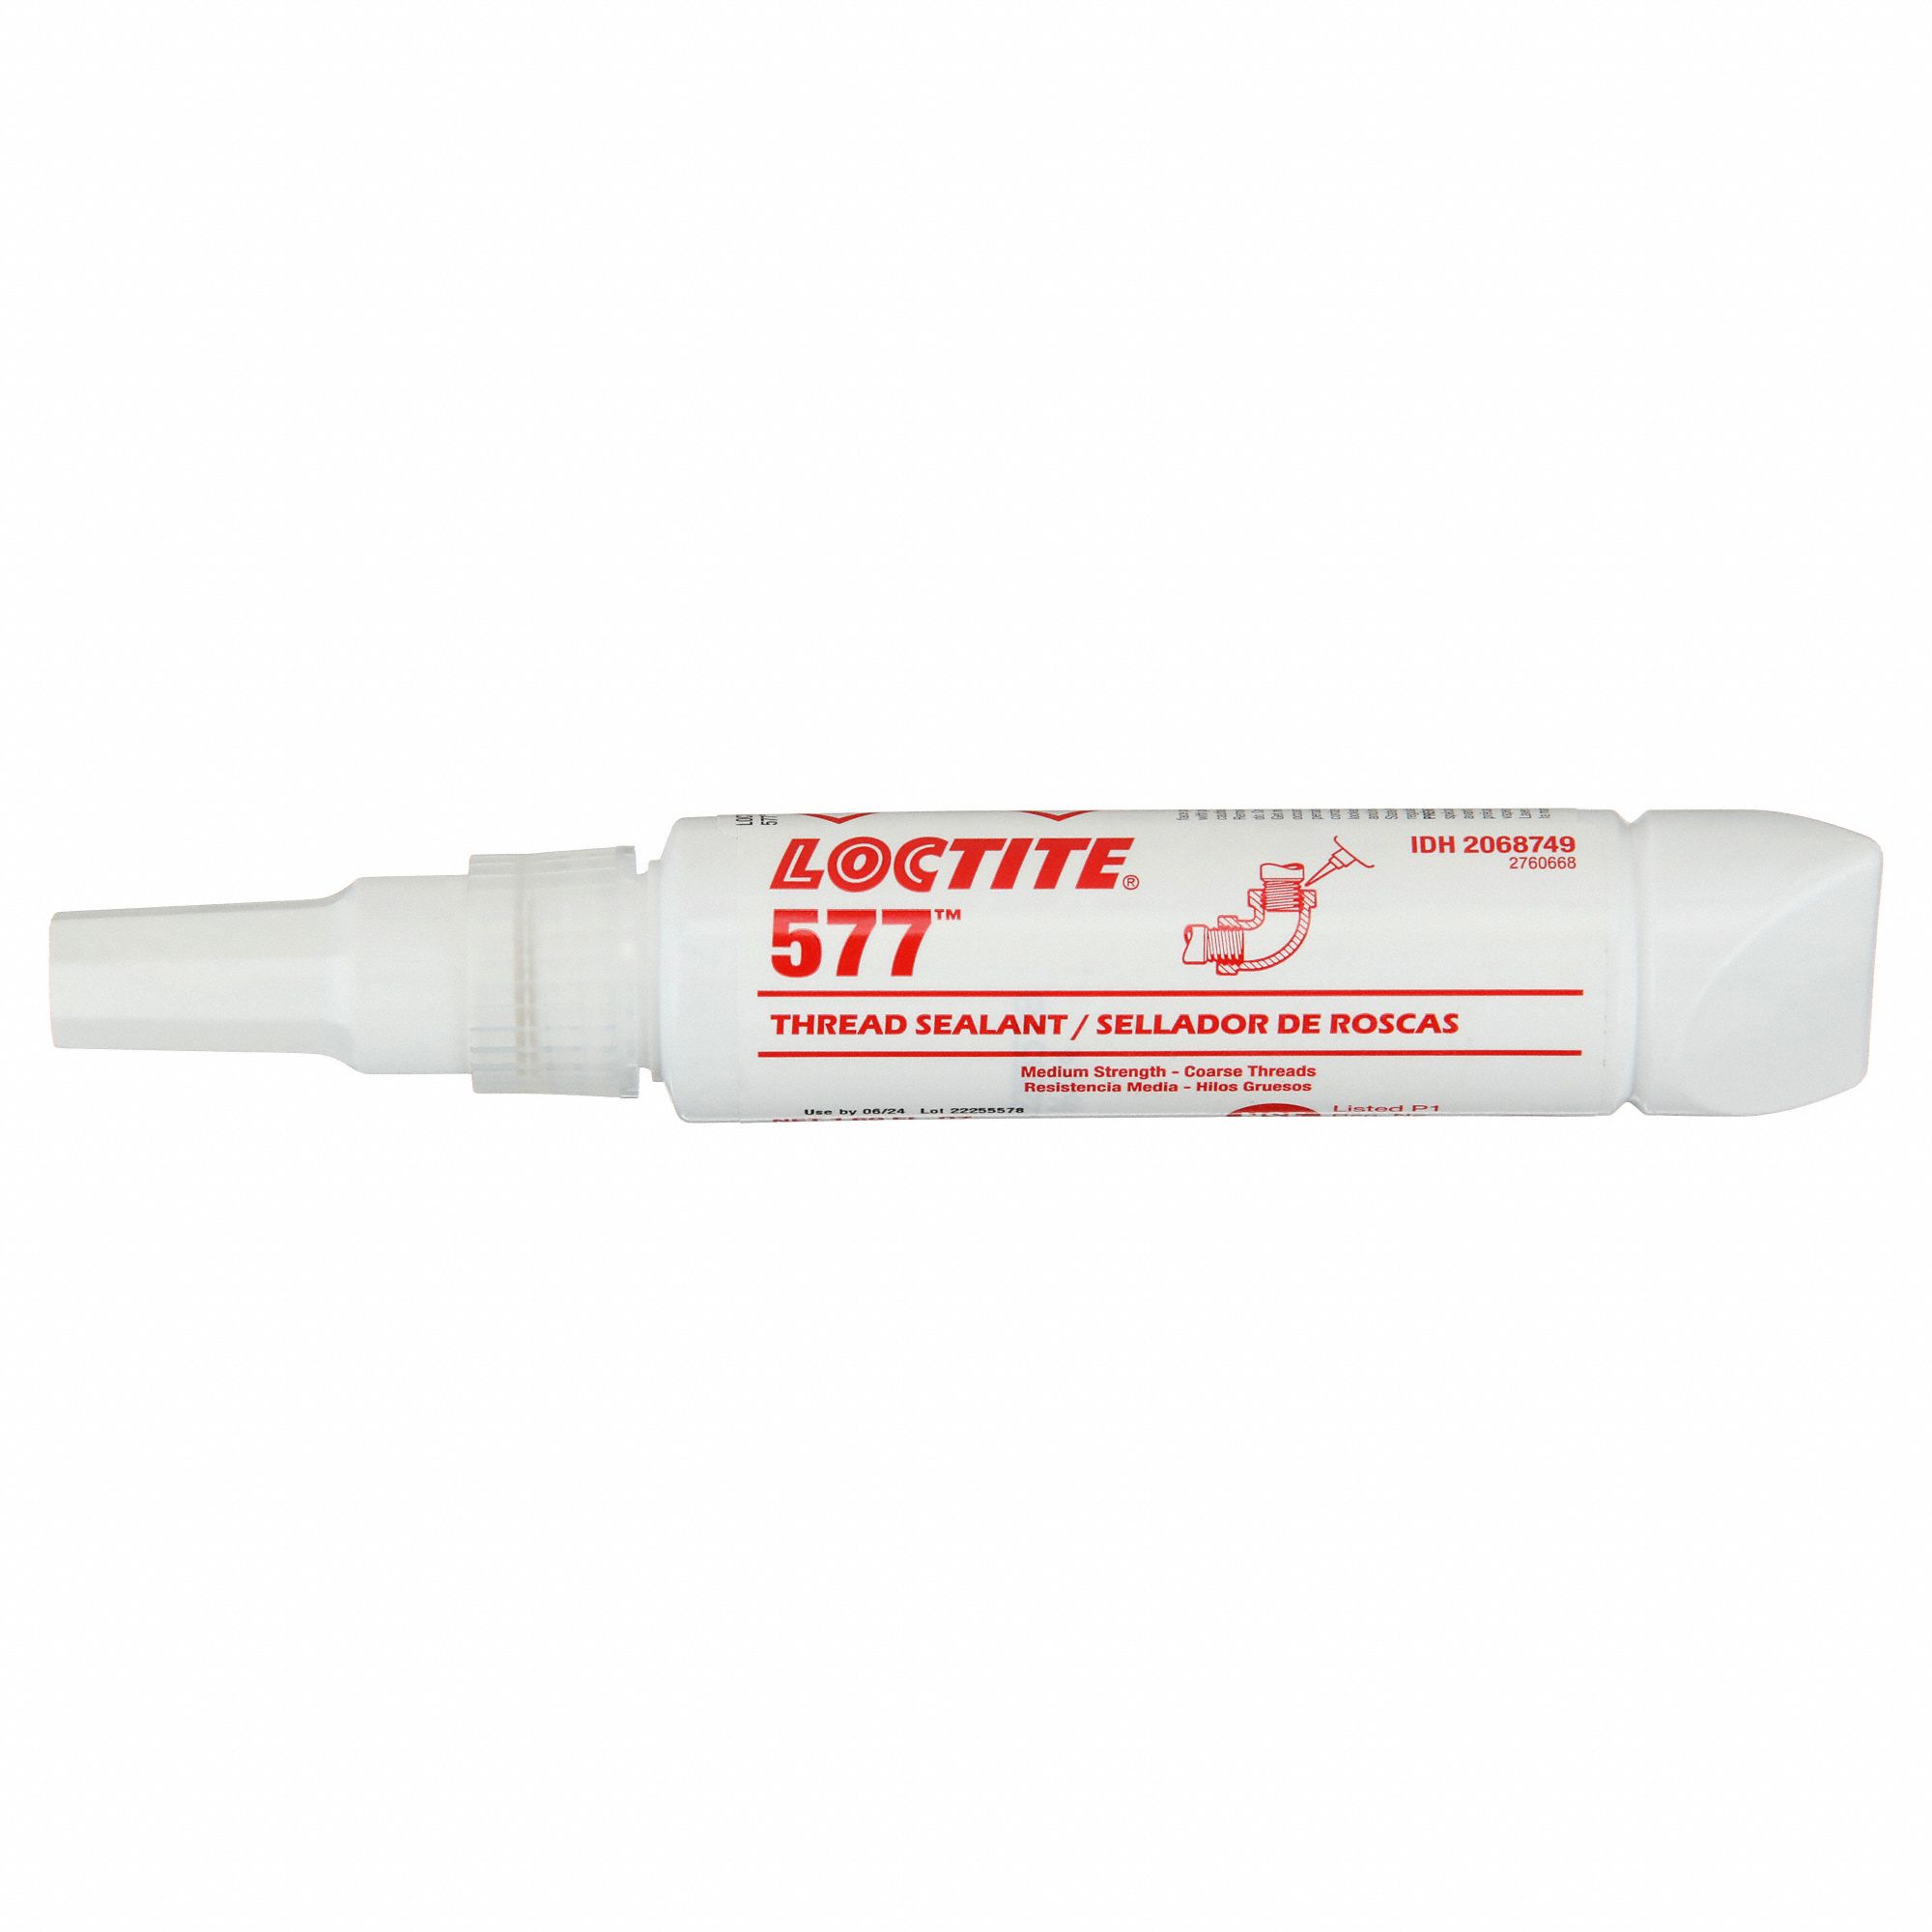 Loctite 577 Medium-strength, general purpose thread sealant